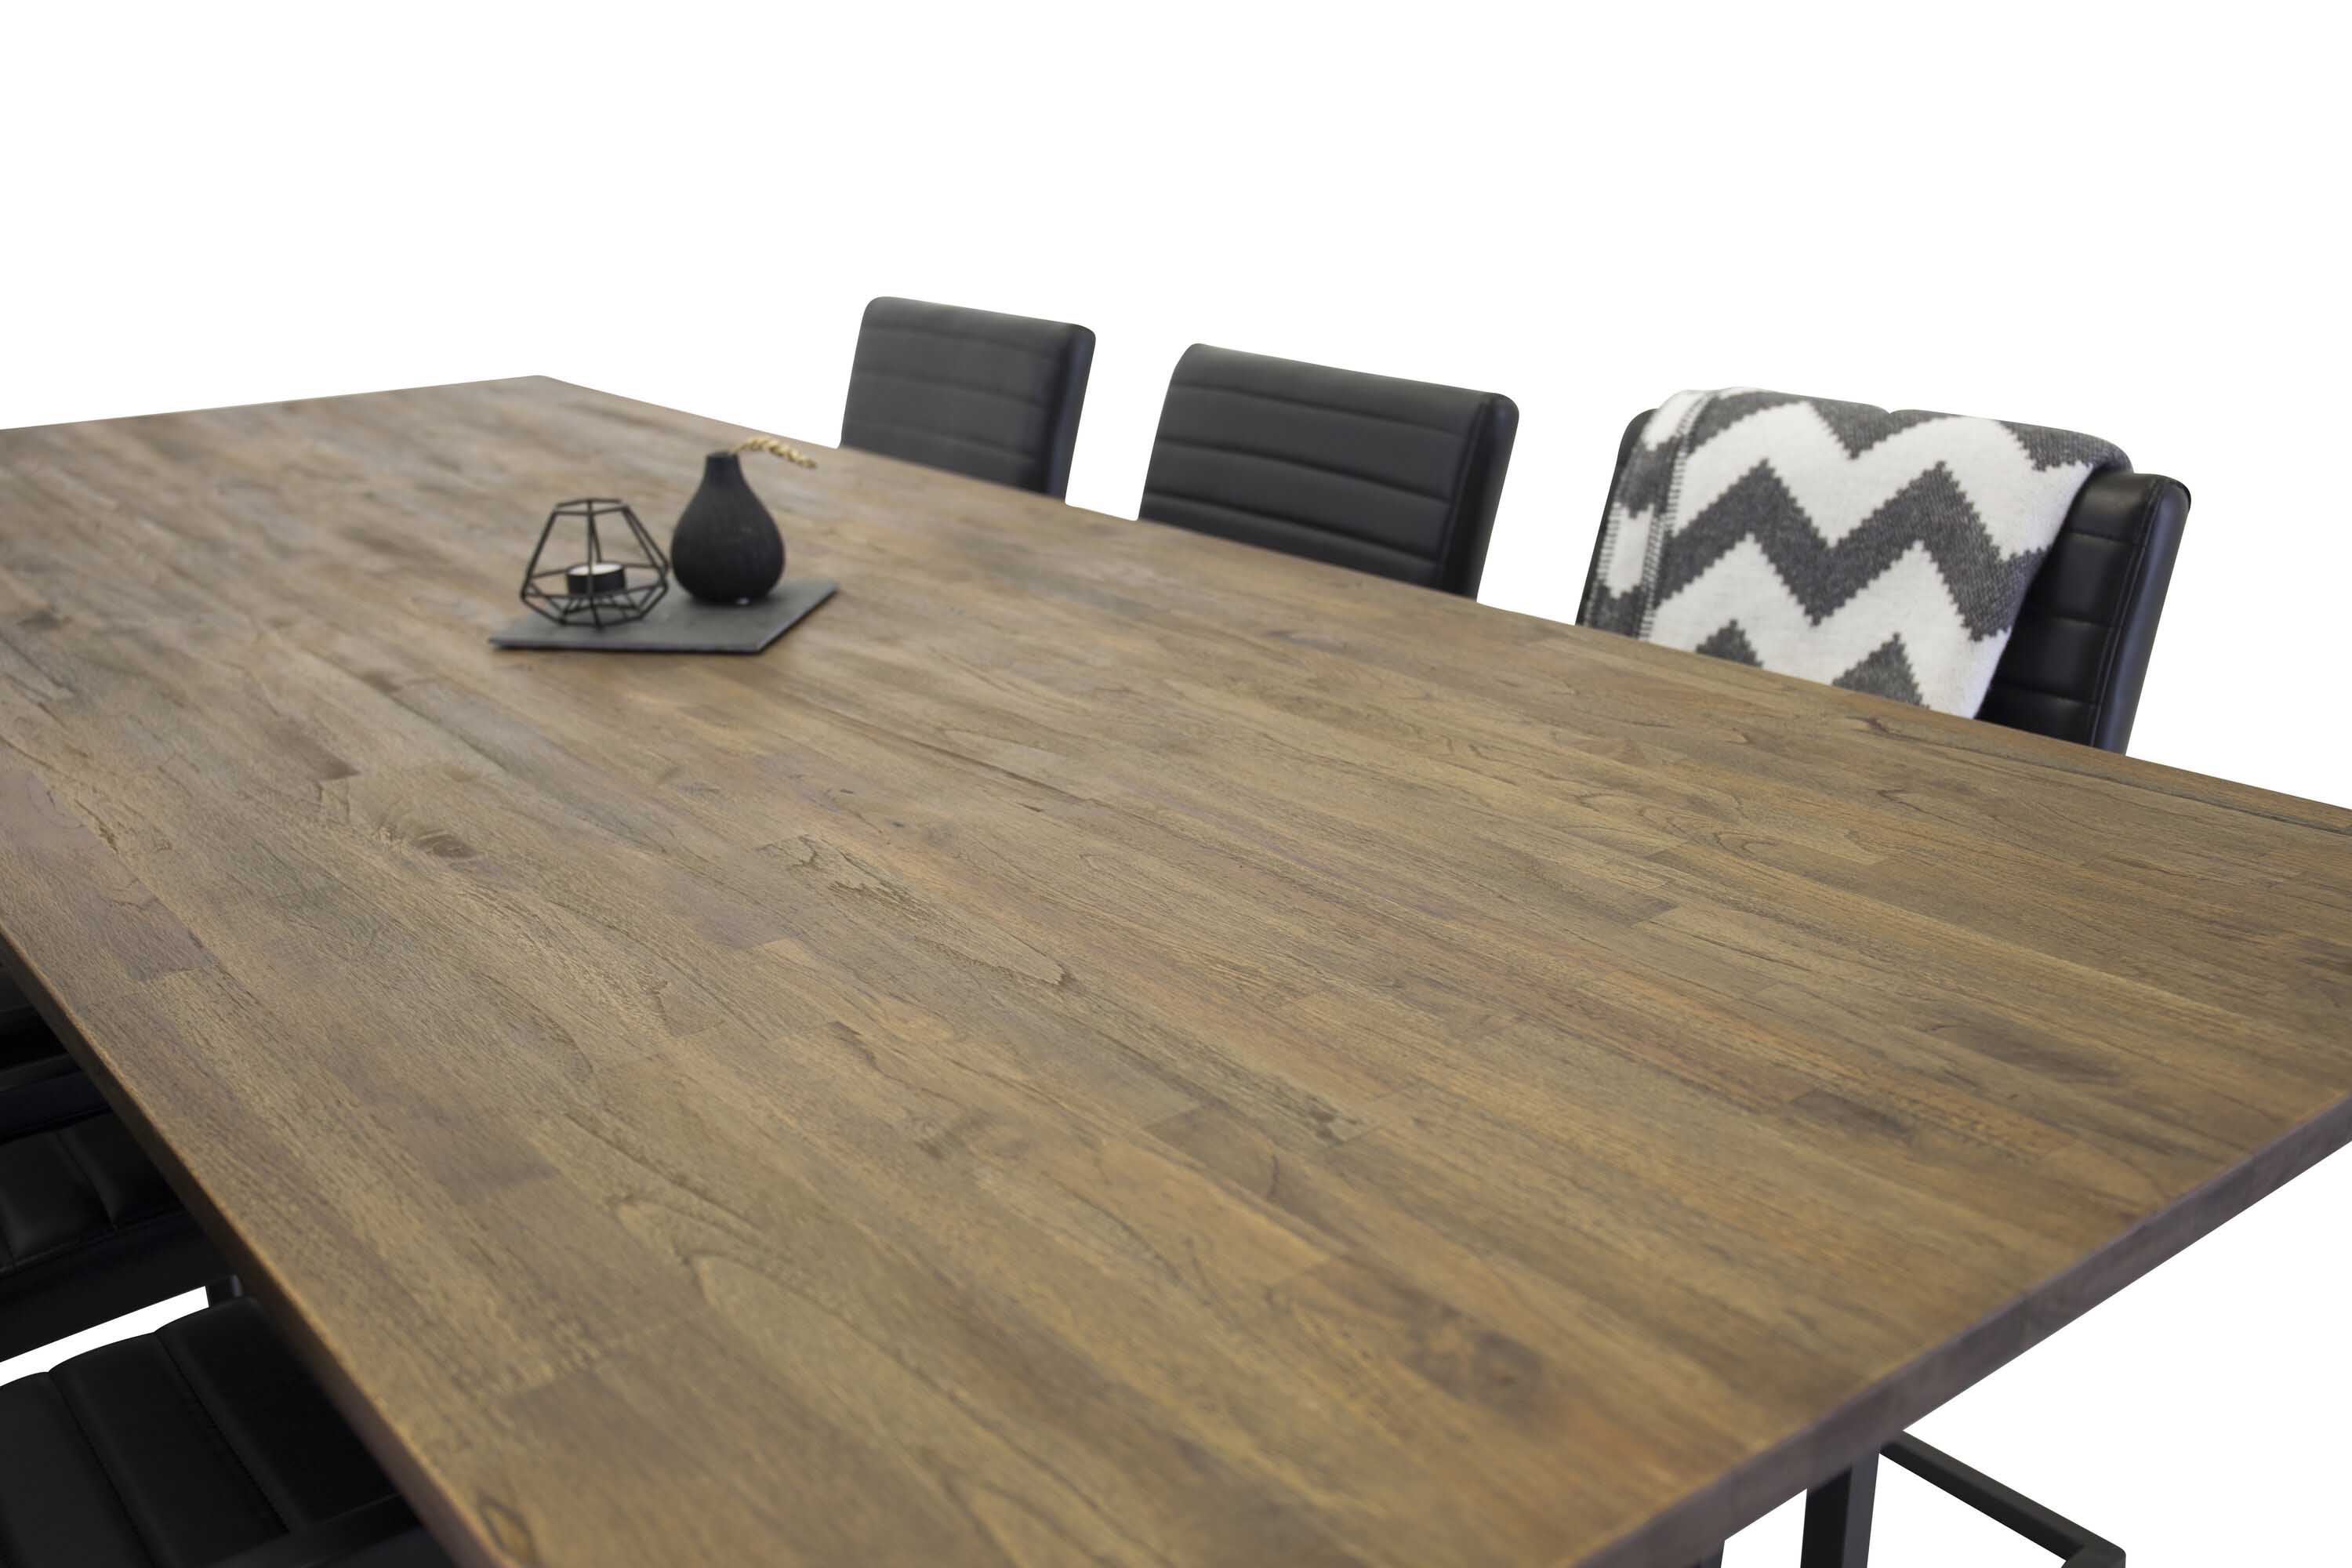 Venture Design Padang & Art spisebordssæt Natur/sort 6 st stole & borde 250 x 100 cm